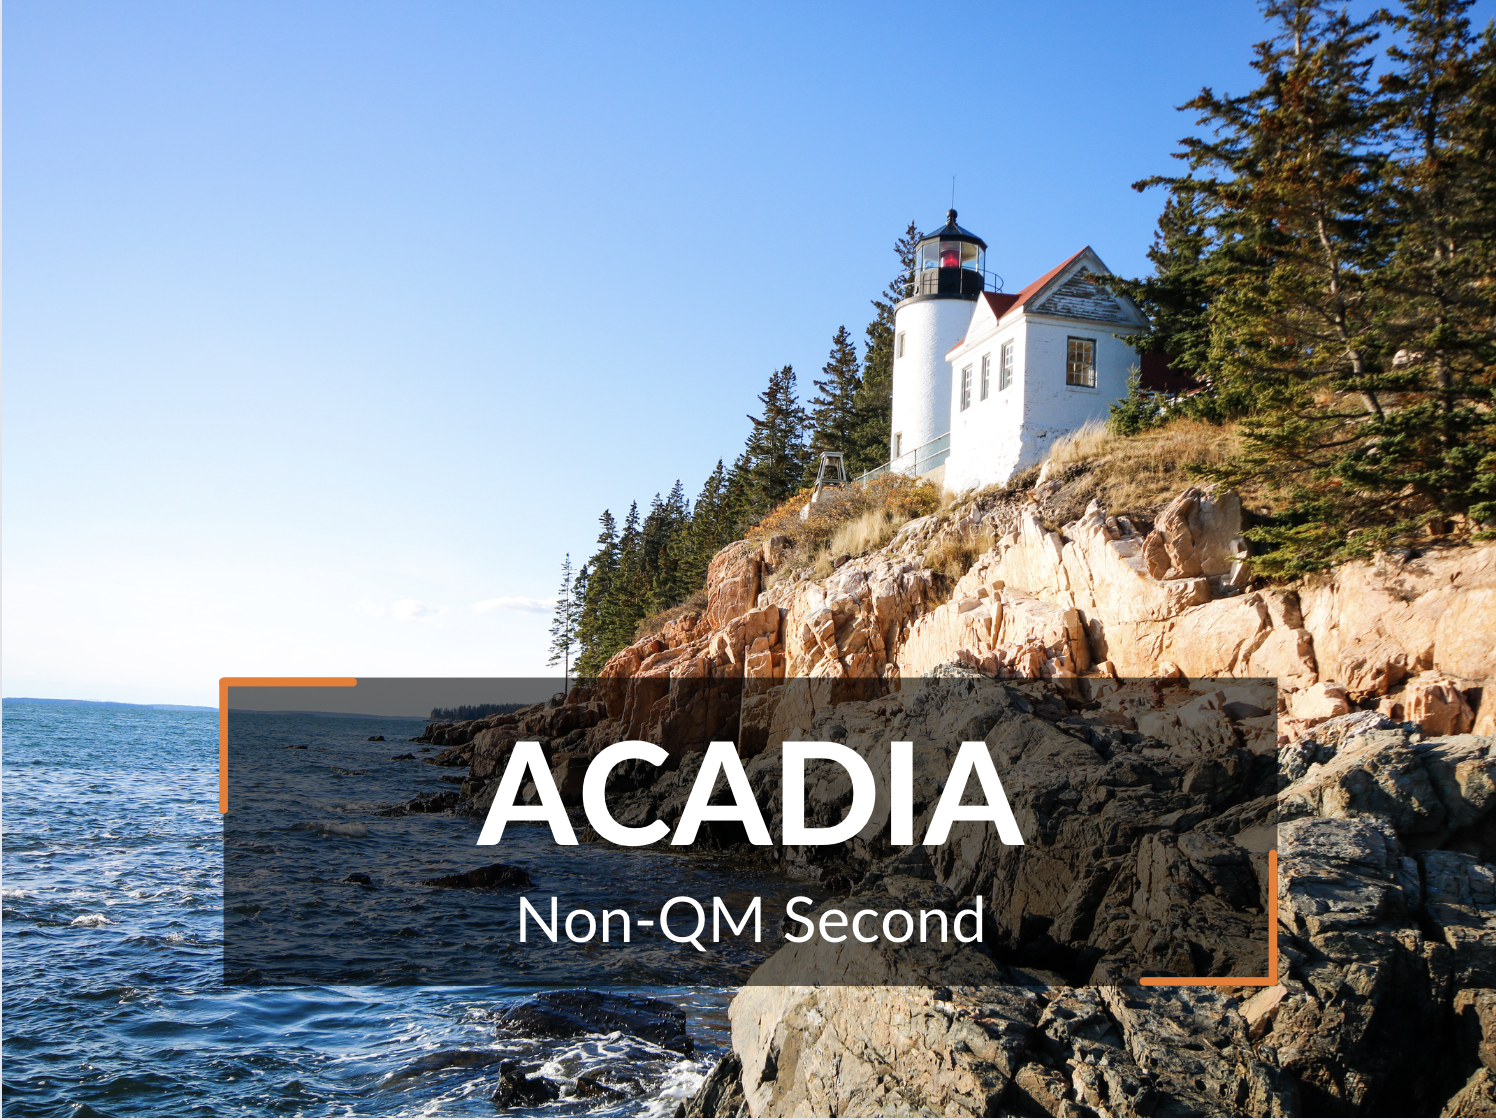 Acadia Non-QM Second